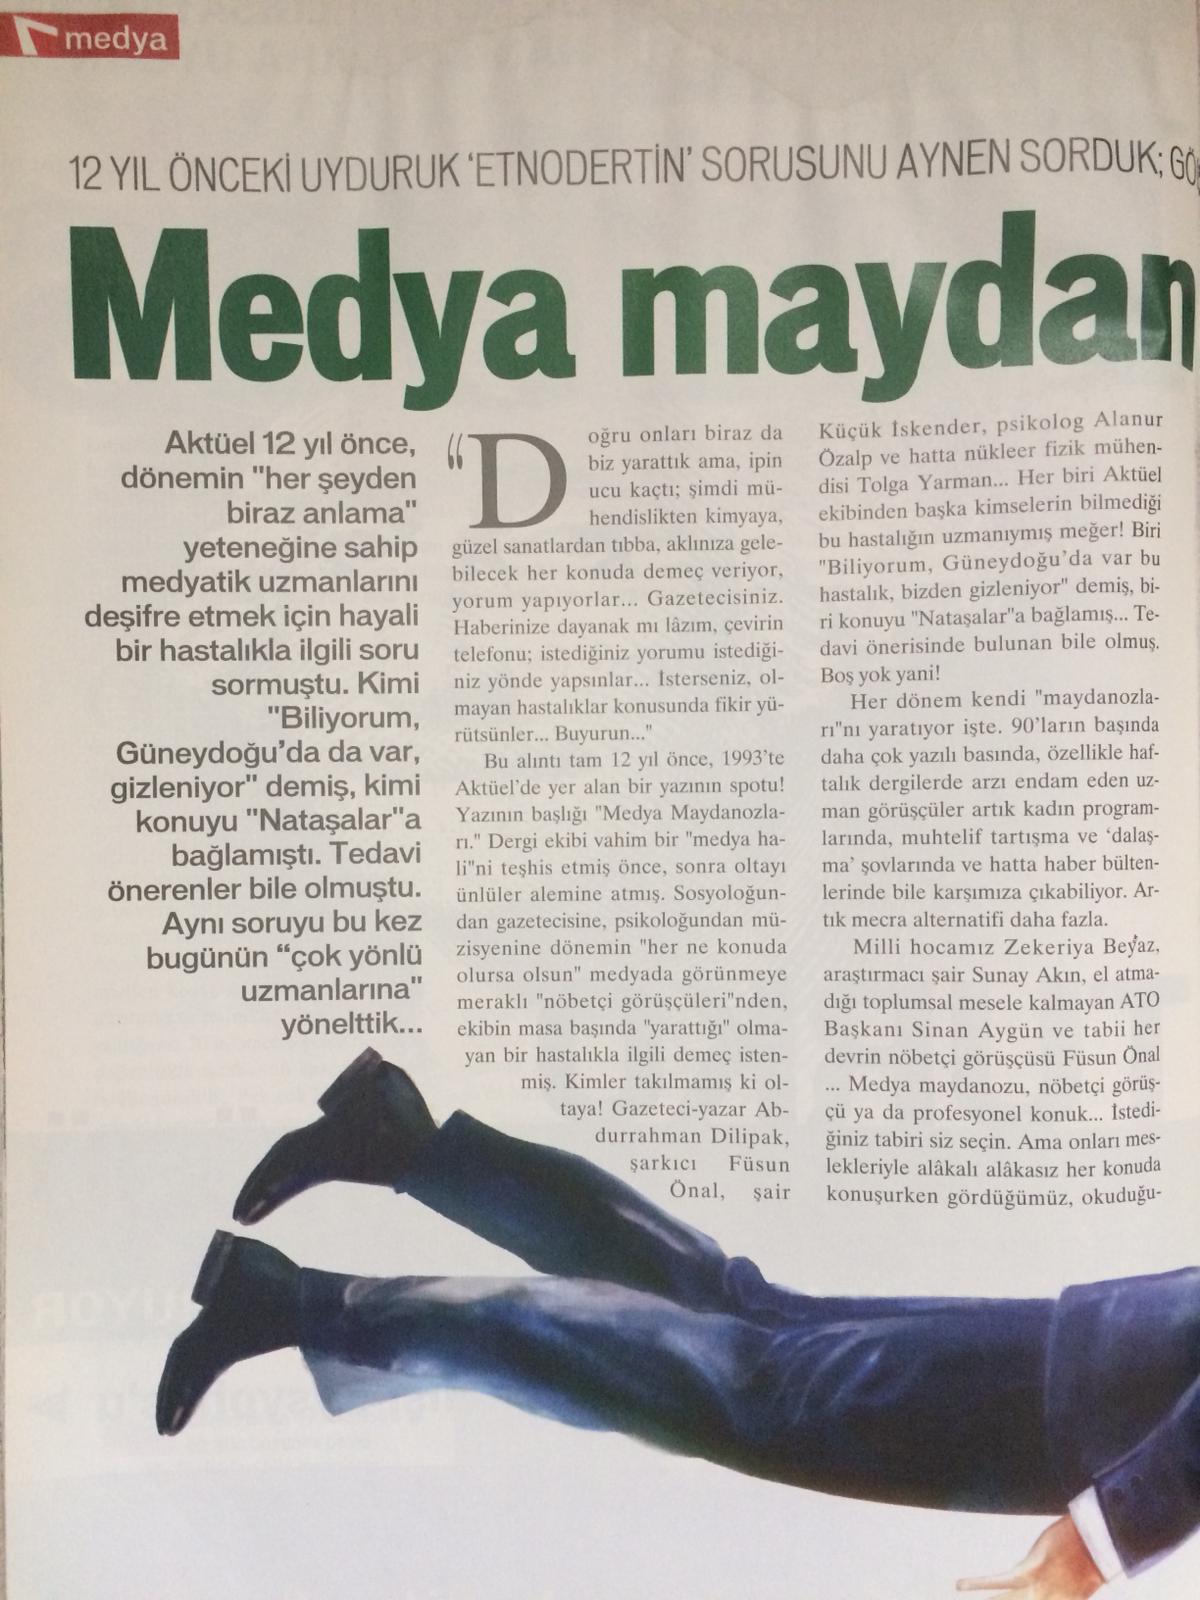 Yeni Aktüel Dergisinin "Medya Maydanozları II" başlıklı yazısı (sf. 1)